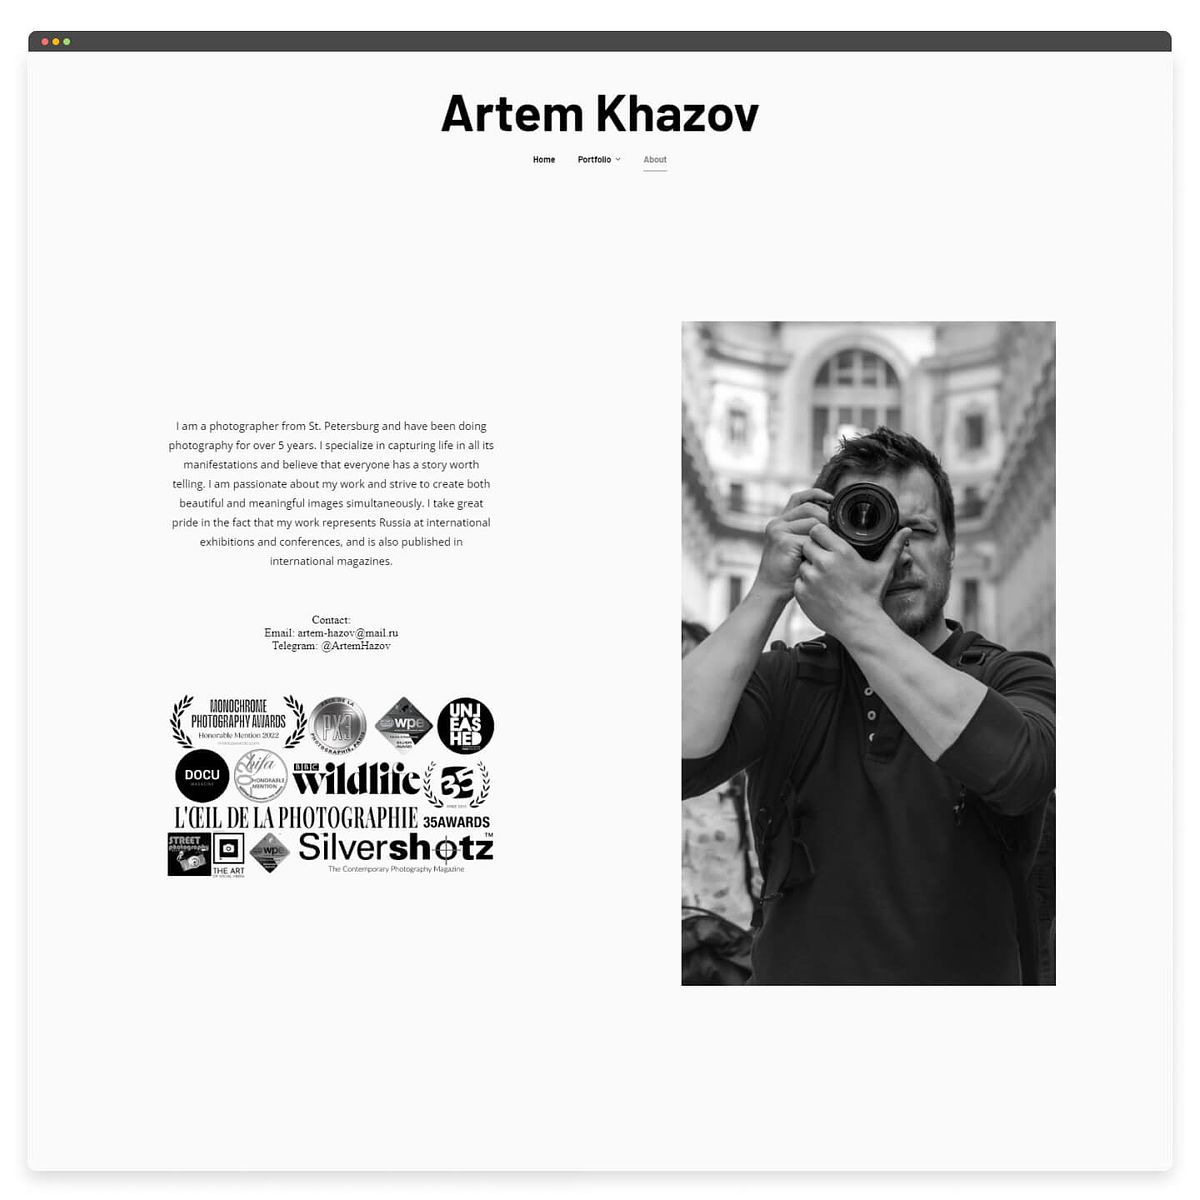 Le portfolio photographique d'Artem Khazov